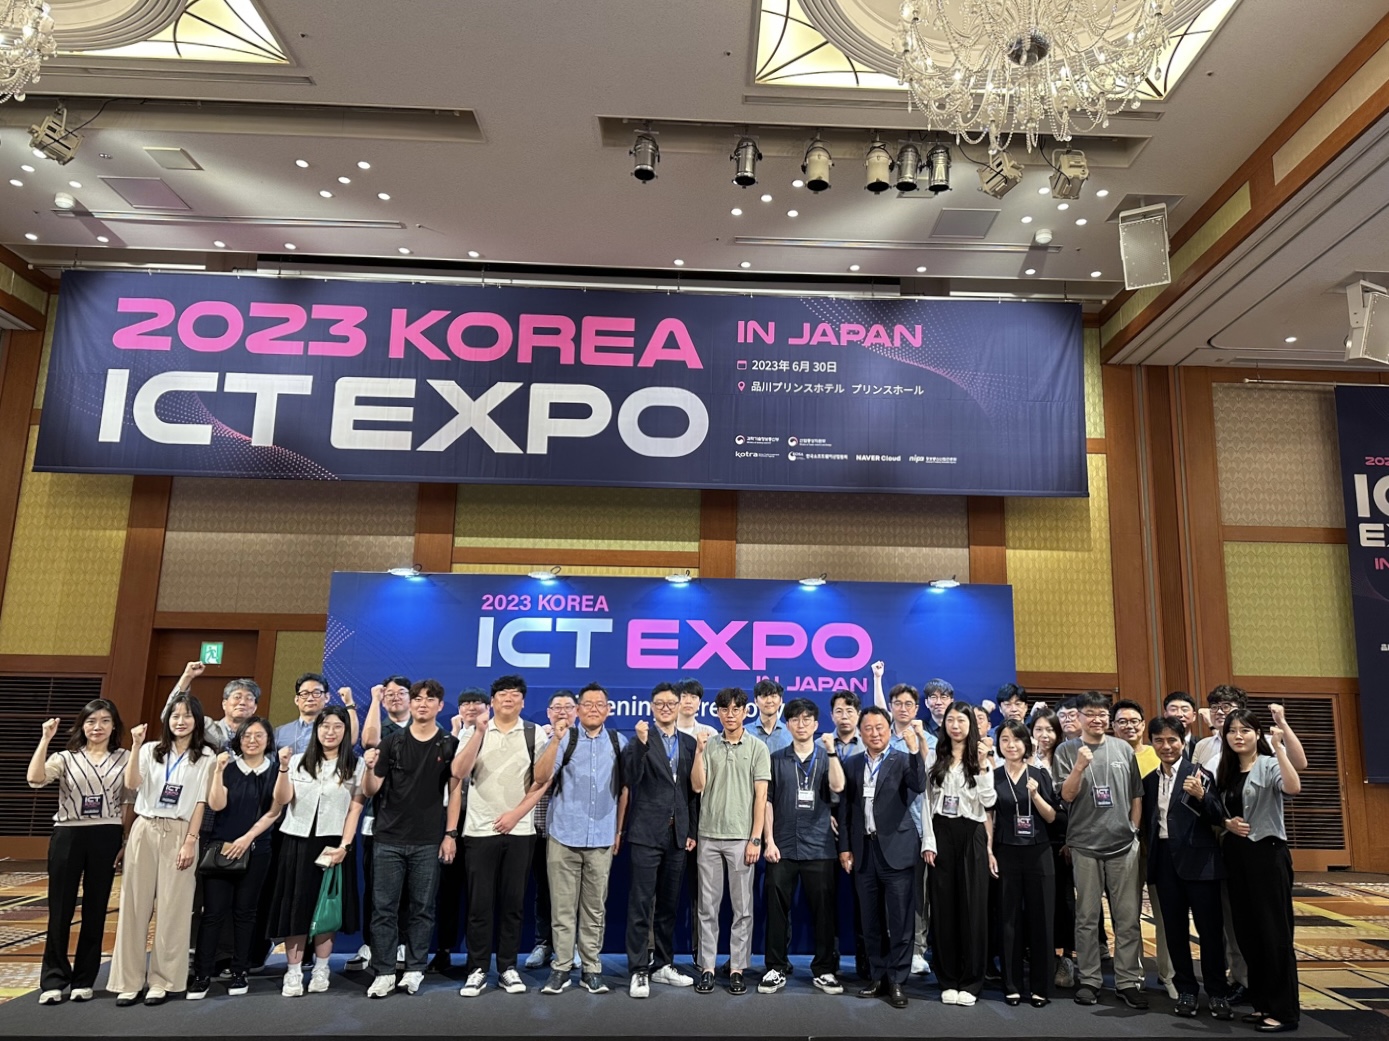 2023 Korea ICT EXPO IN JAPAN